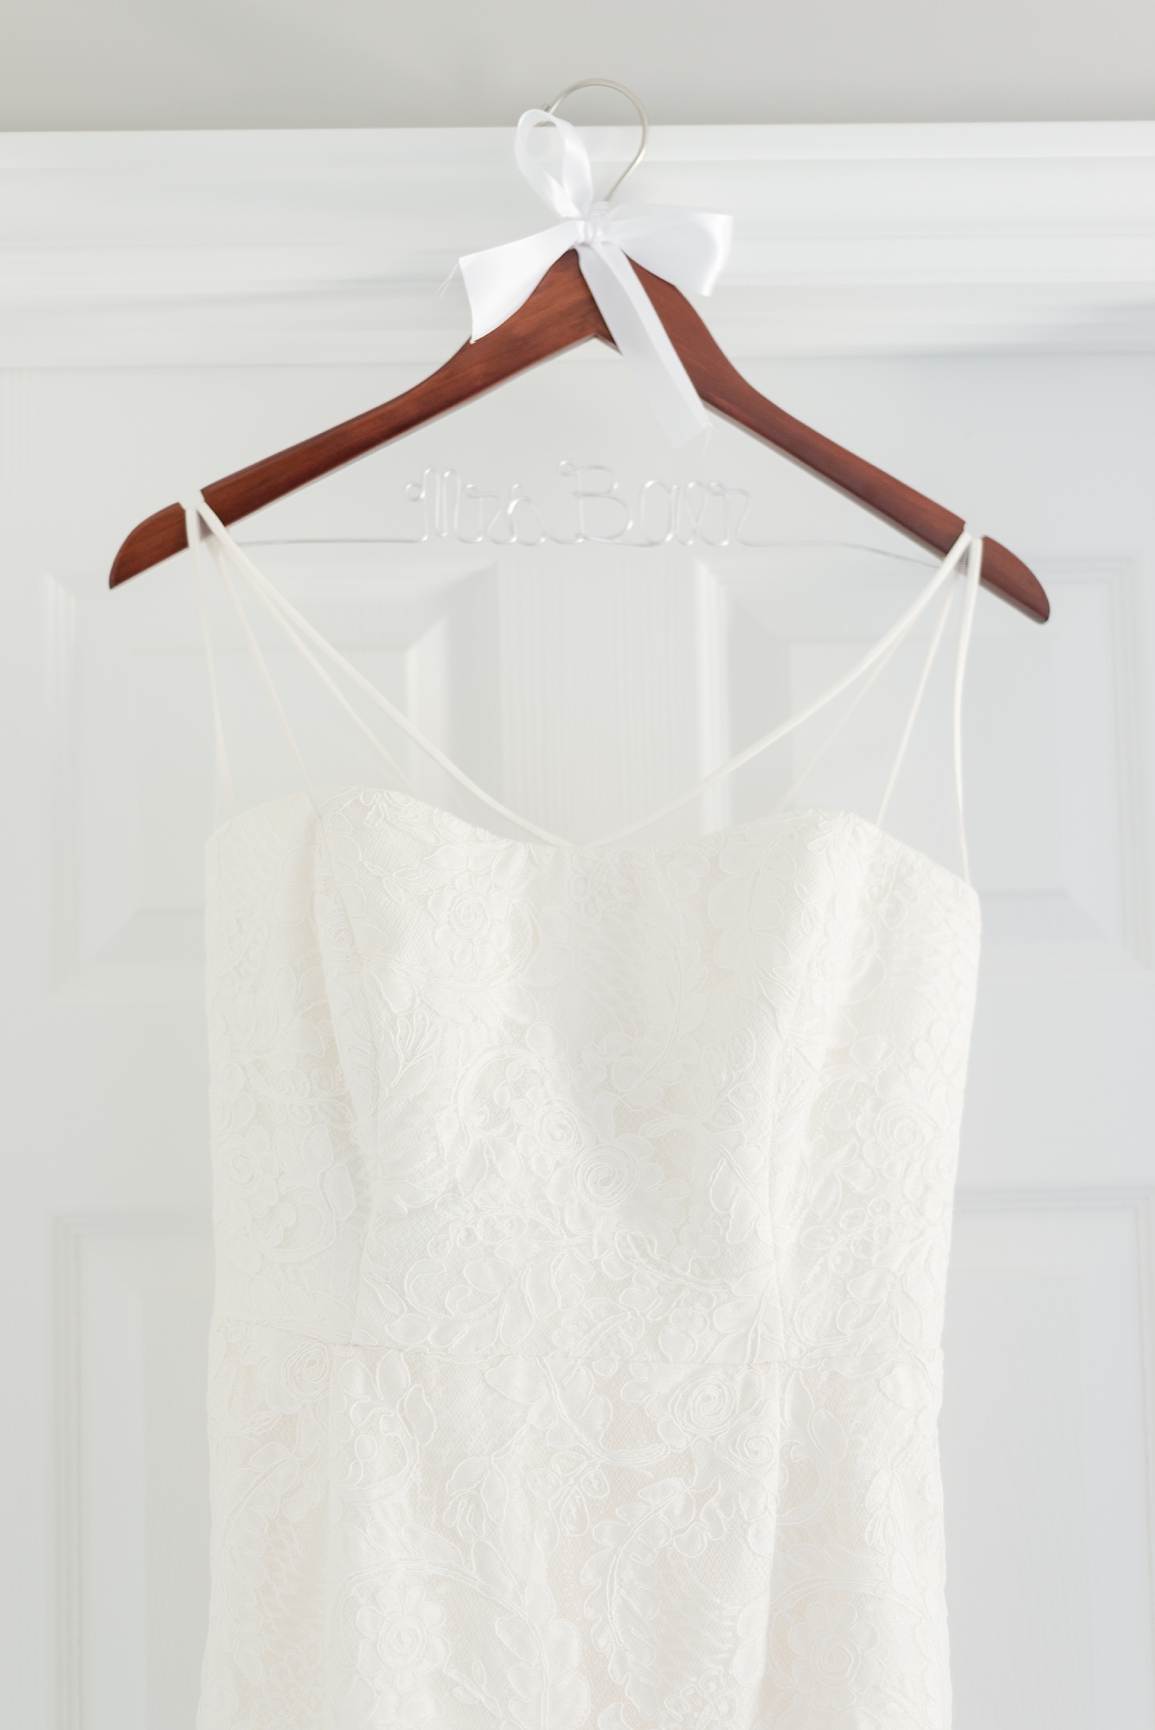 Wooden hanger for wedding dress